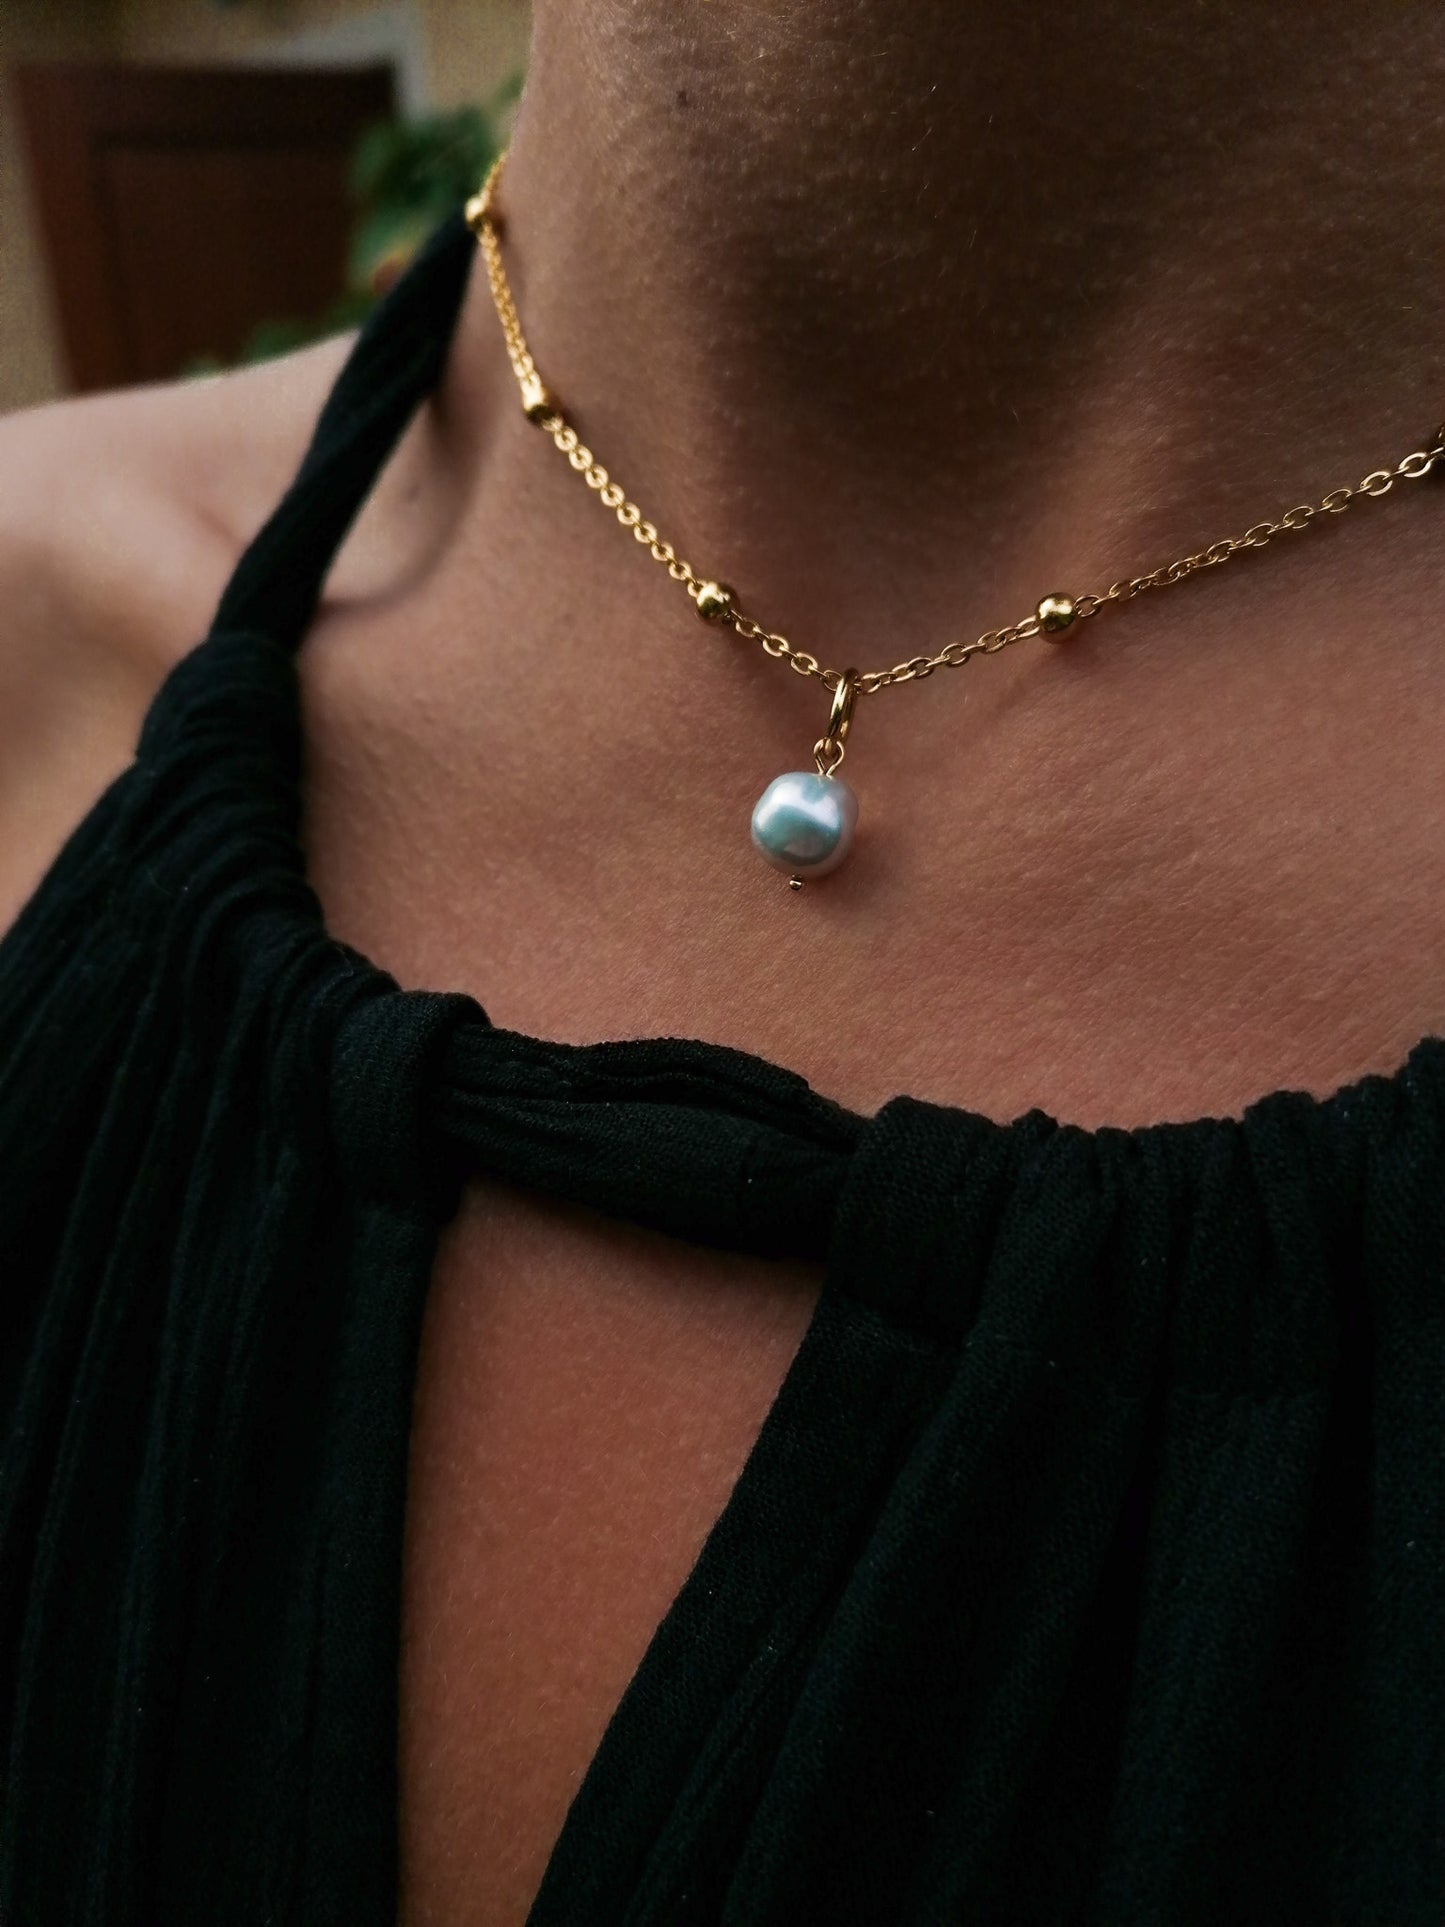 Caracas necklace